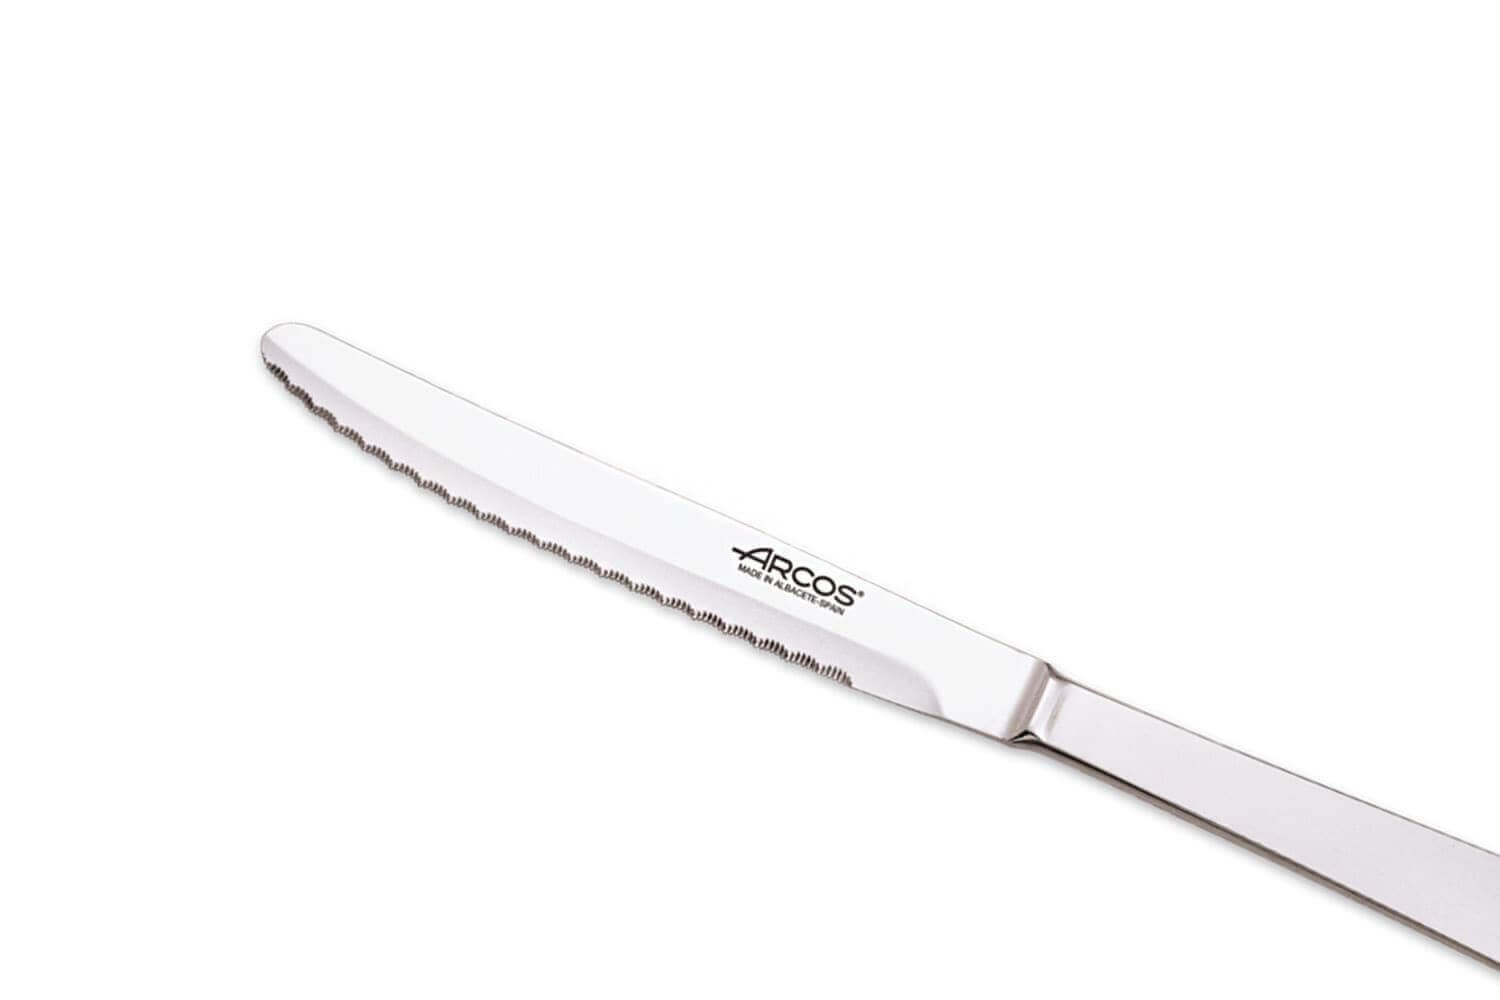 12 couteaux de table monoblocs Arcos 12.5cm